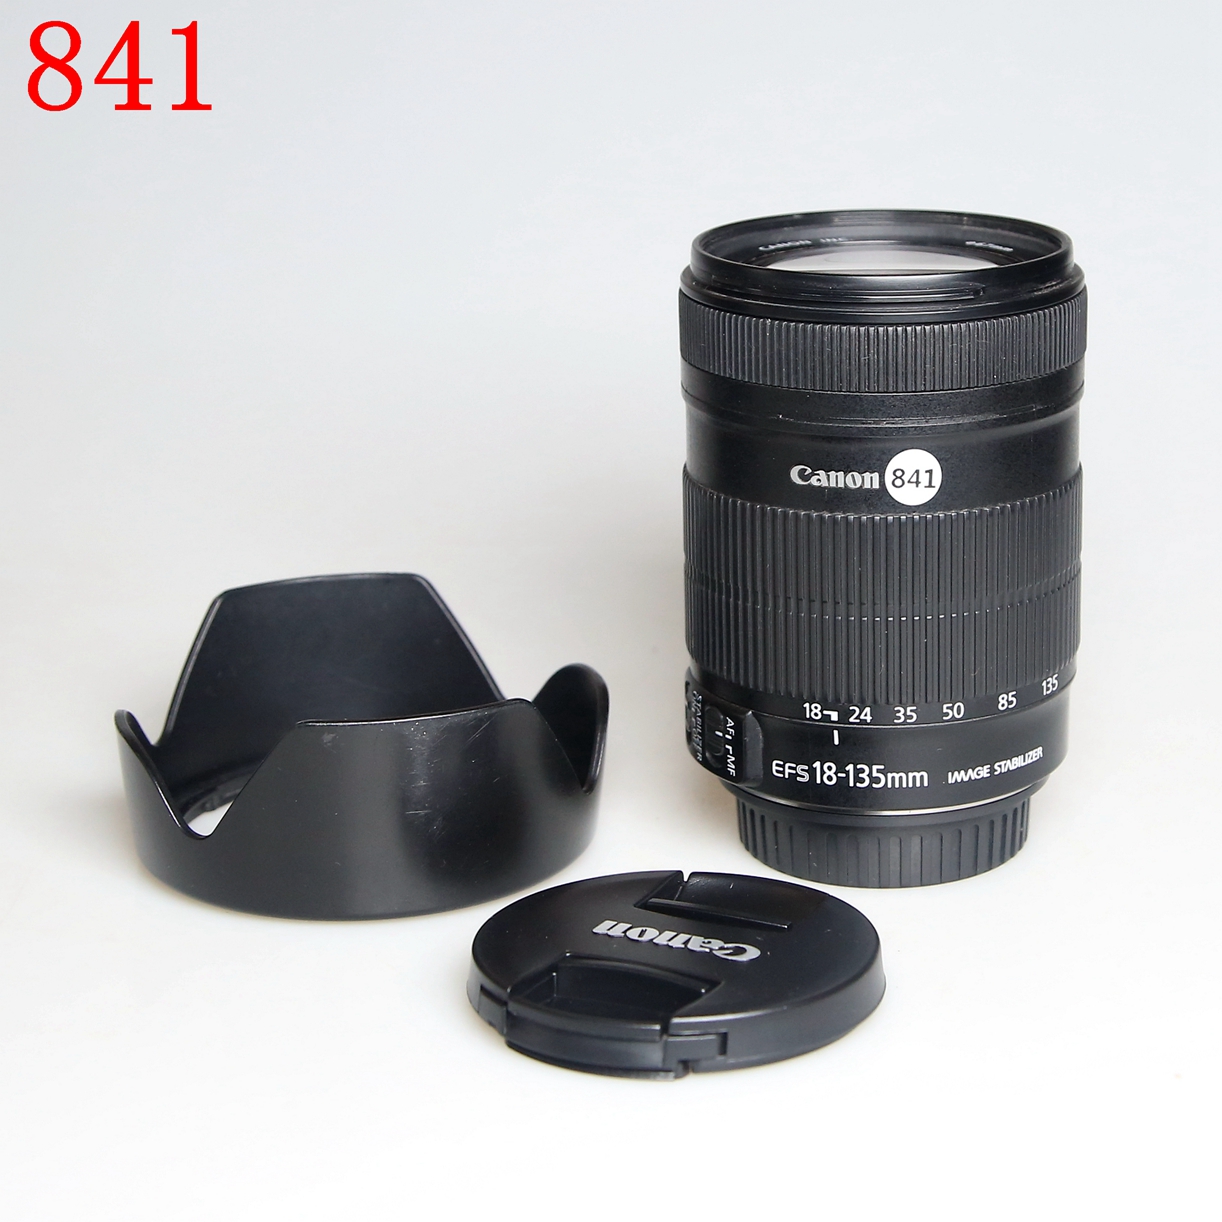 佳能 EF-S 18-135mm f/3.5-5.6 IS基础单反相机镜头编号841